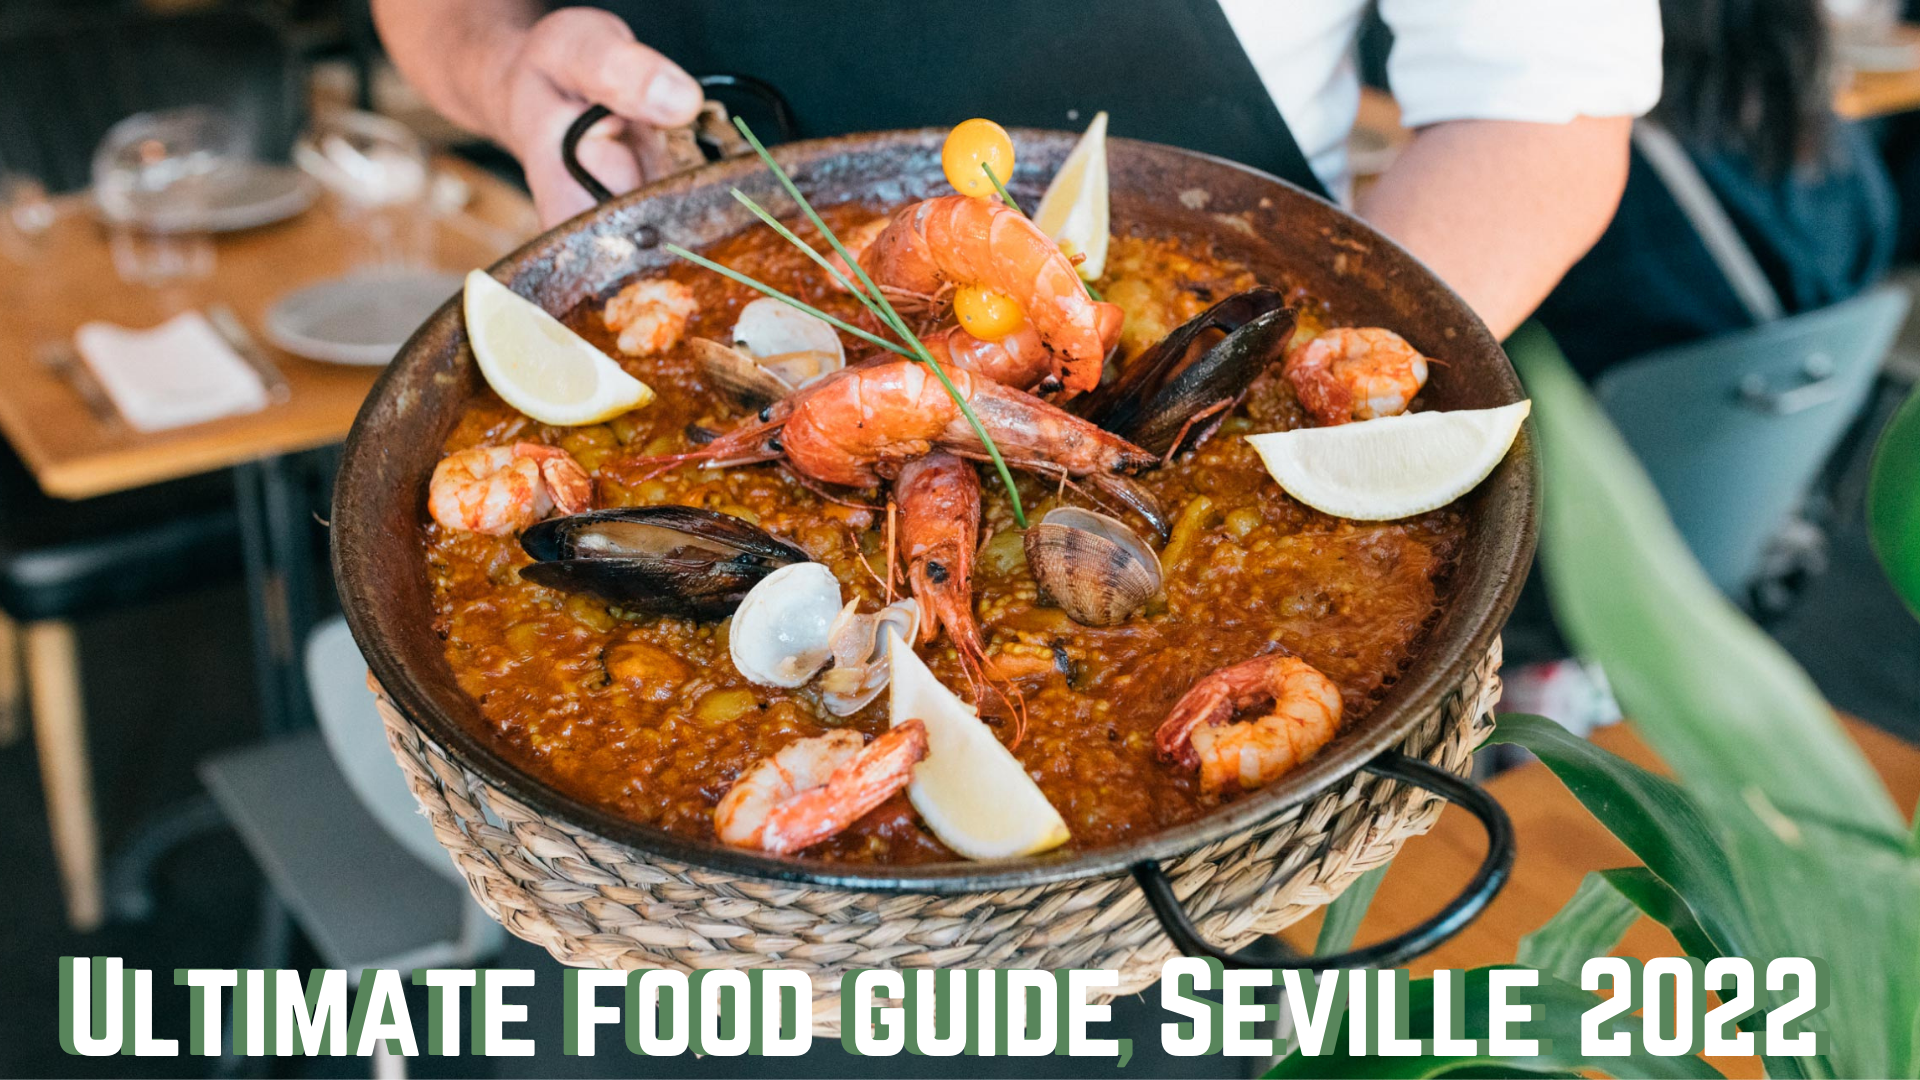 Ultimate Food Guide Seville 2020